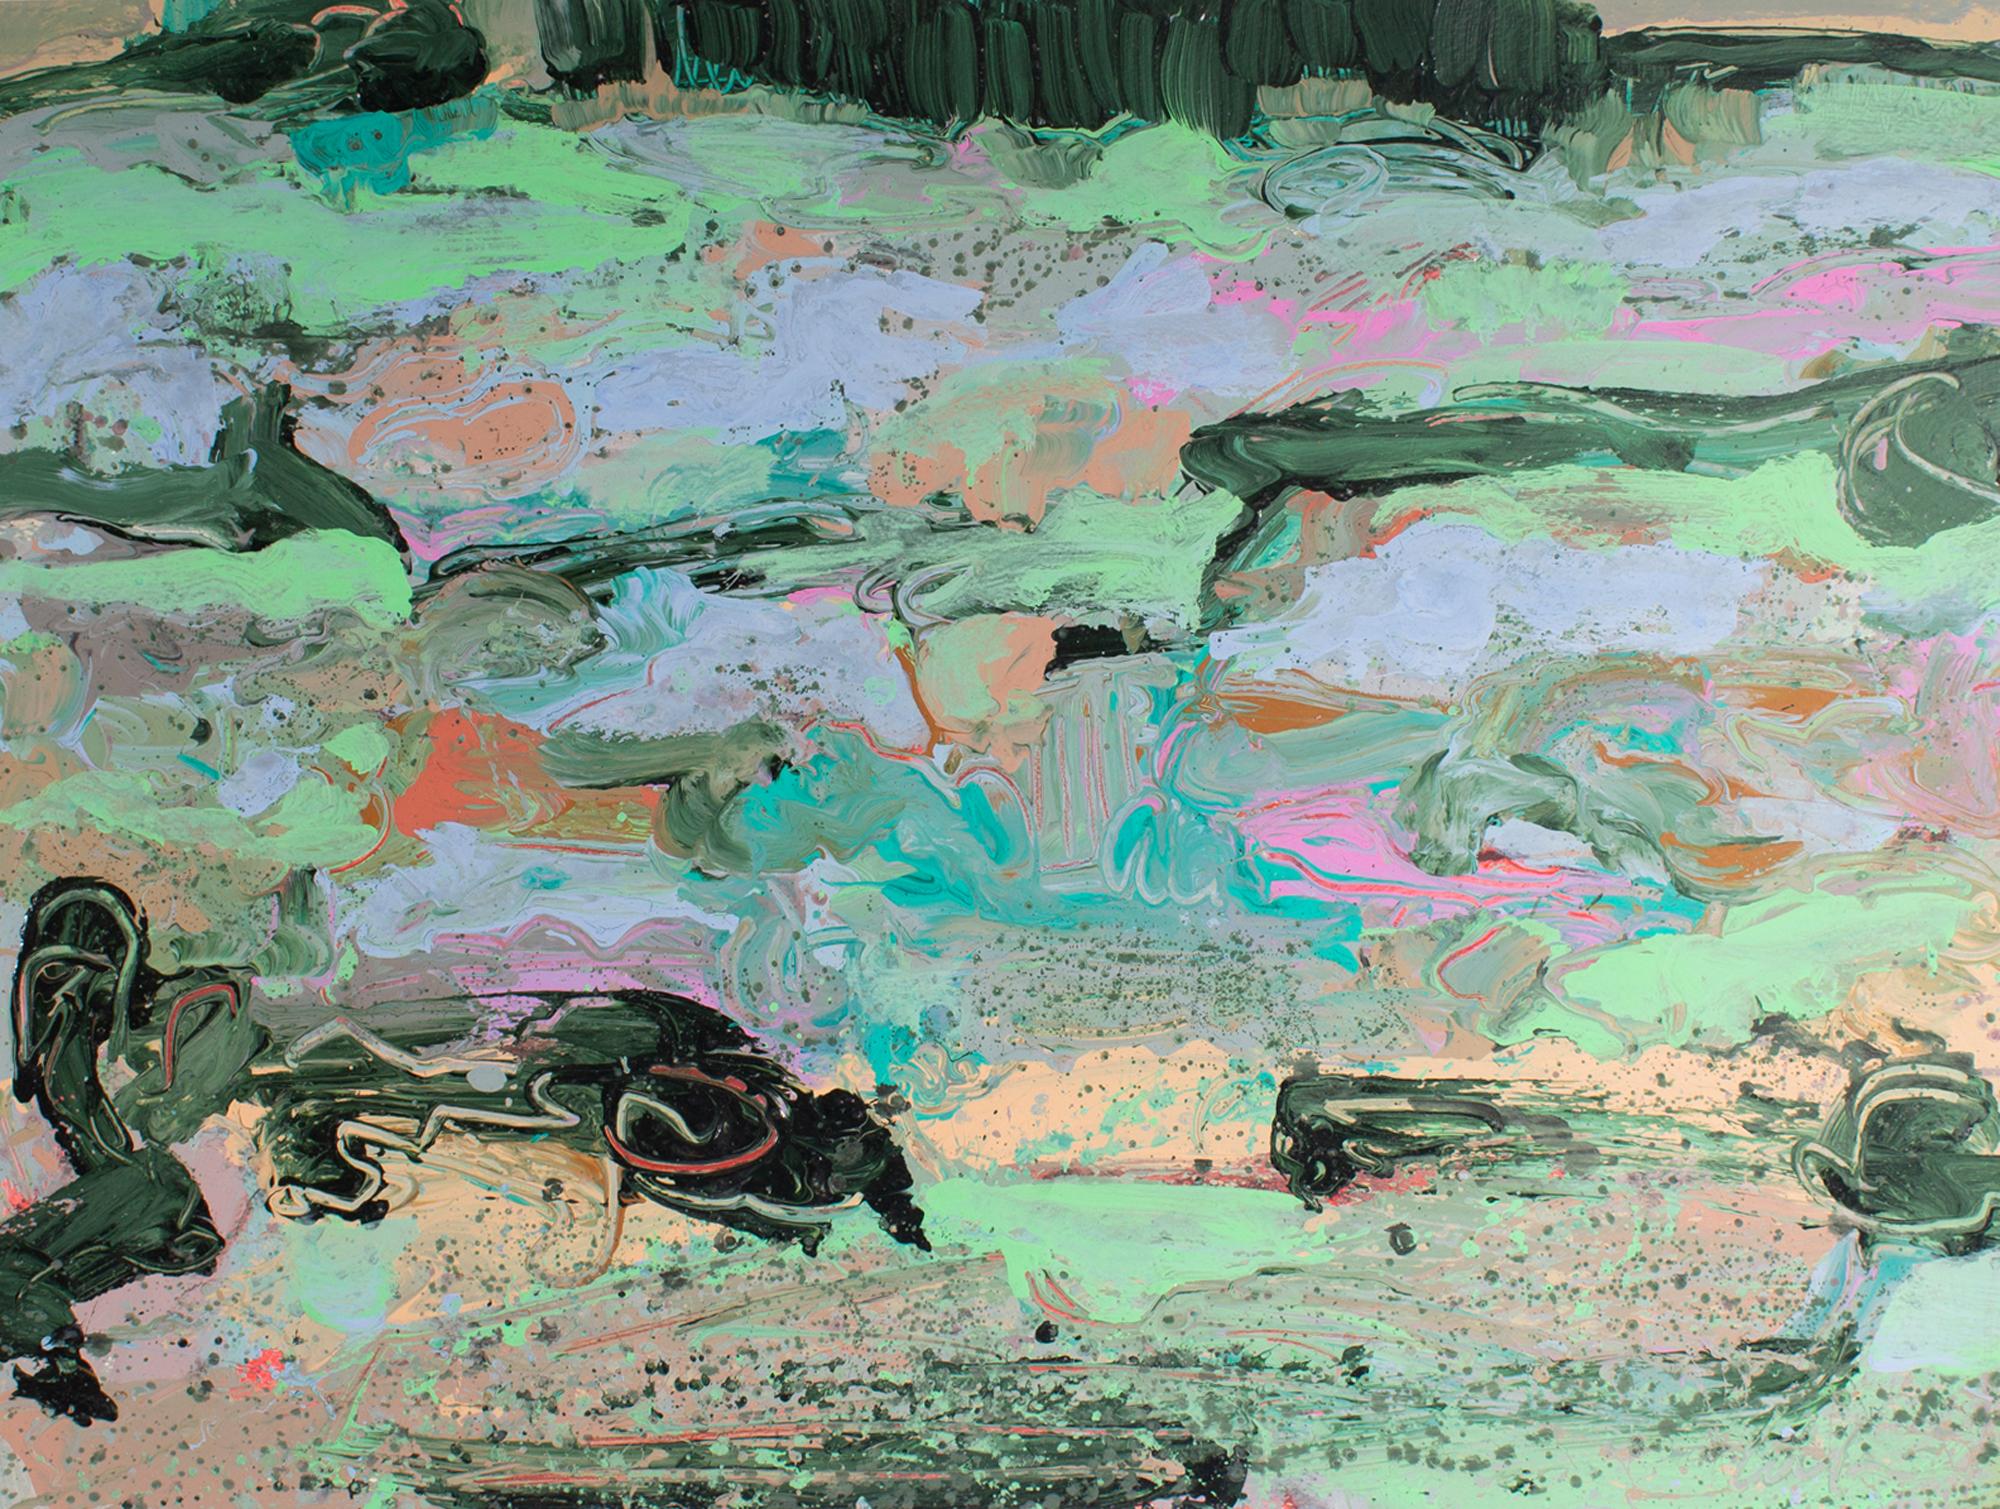 Peinture acrylique sur papier des années 1980 de l'artiste américain Harry Harris (1935-2004). Peinte au pinceau, cette peinture de paysage abstrait représente un paysage vallonné agrémenté d'arbustes aux couleurs pastel et d'un bosquet d'arbres au